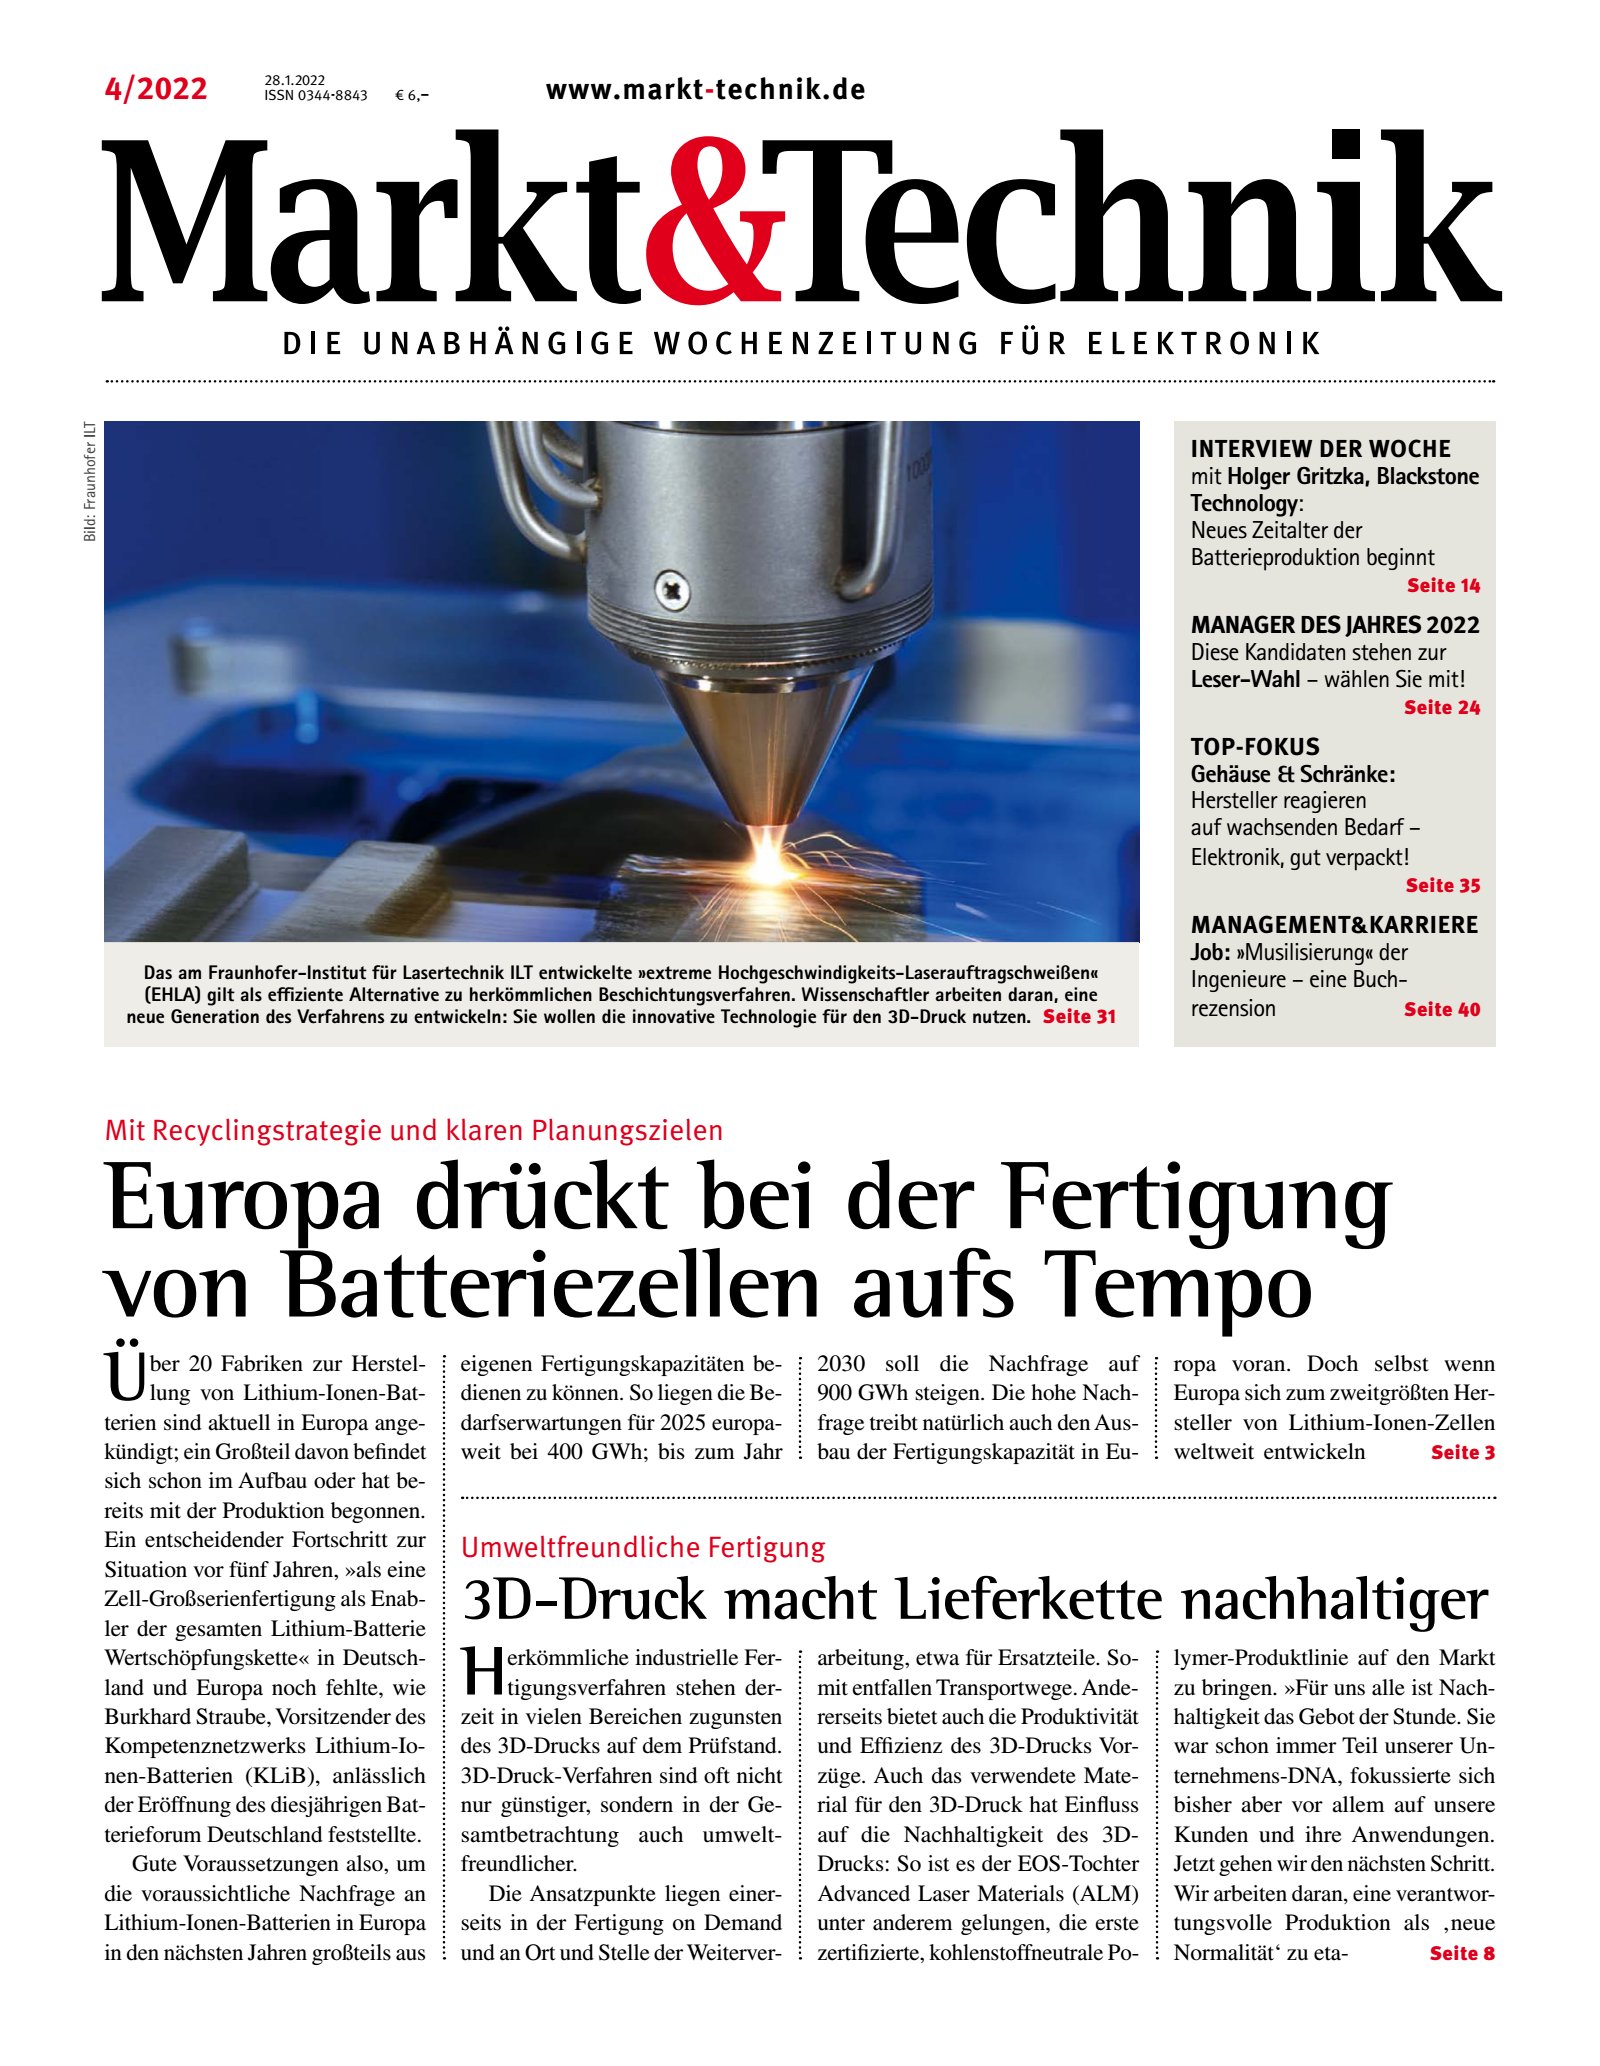 Markt&Technik 04/2022 Digital